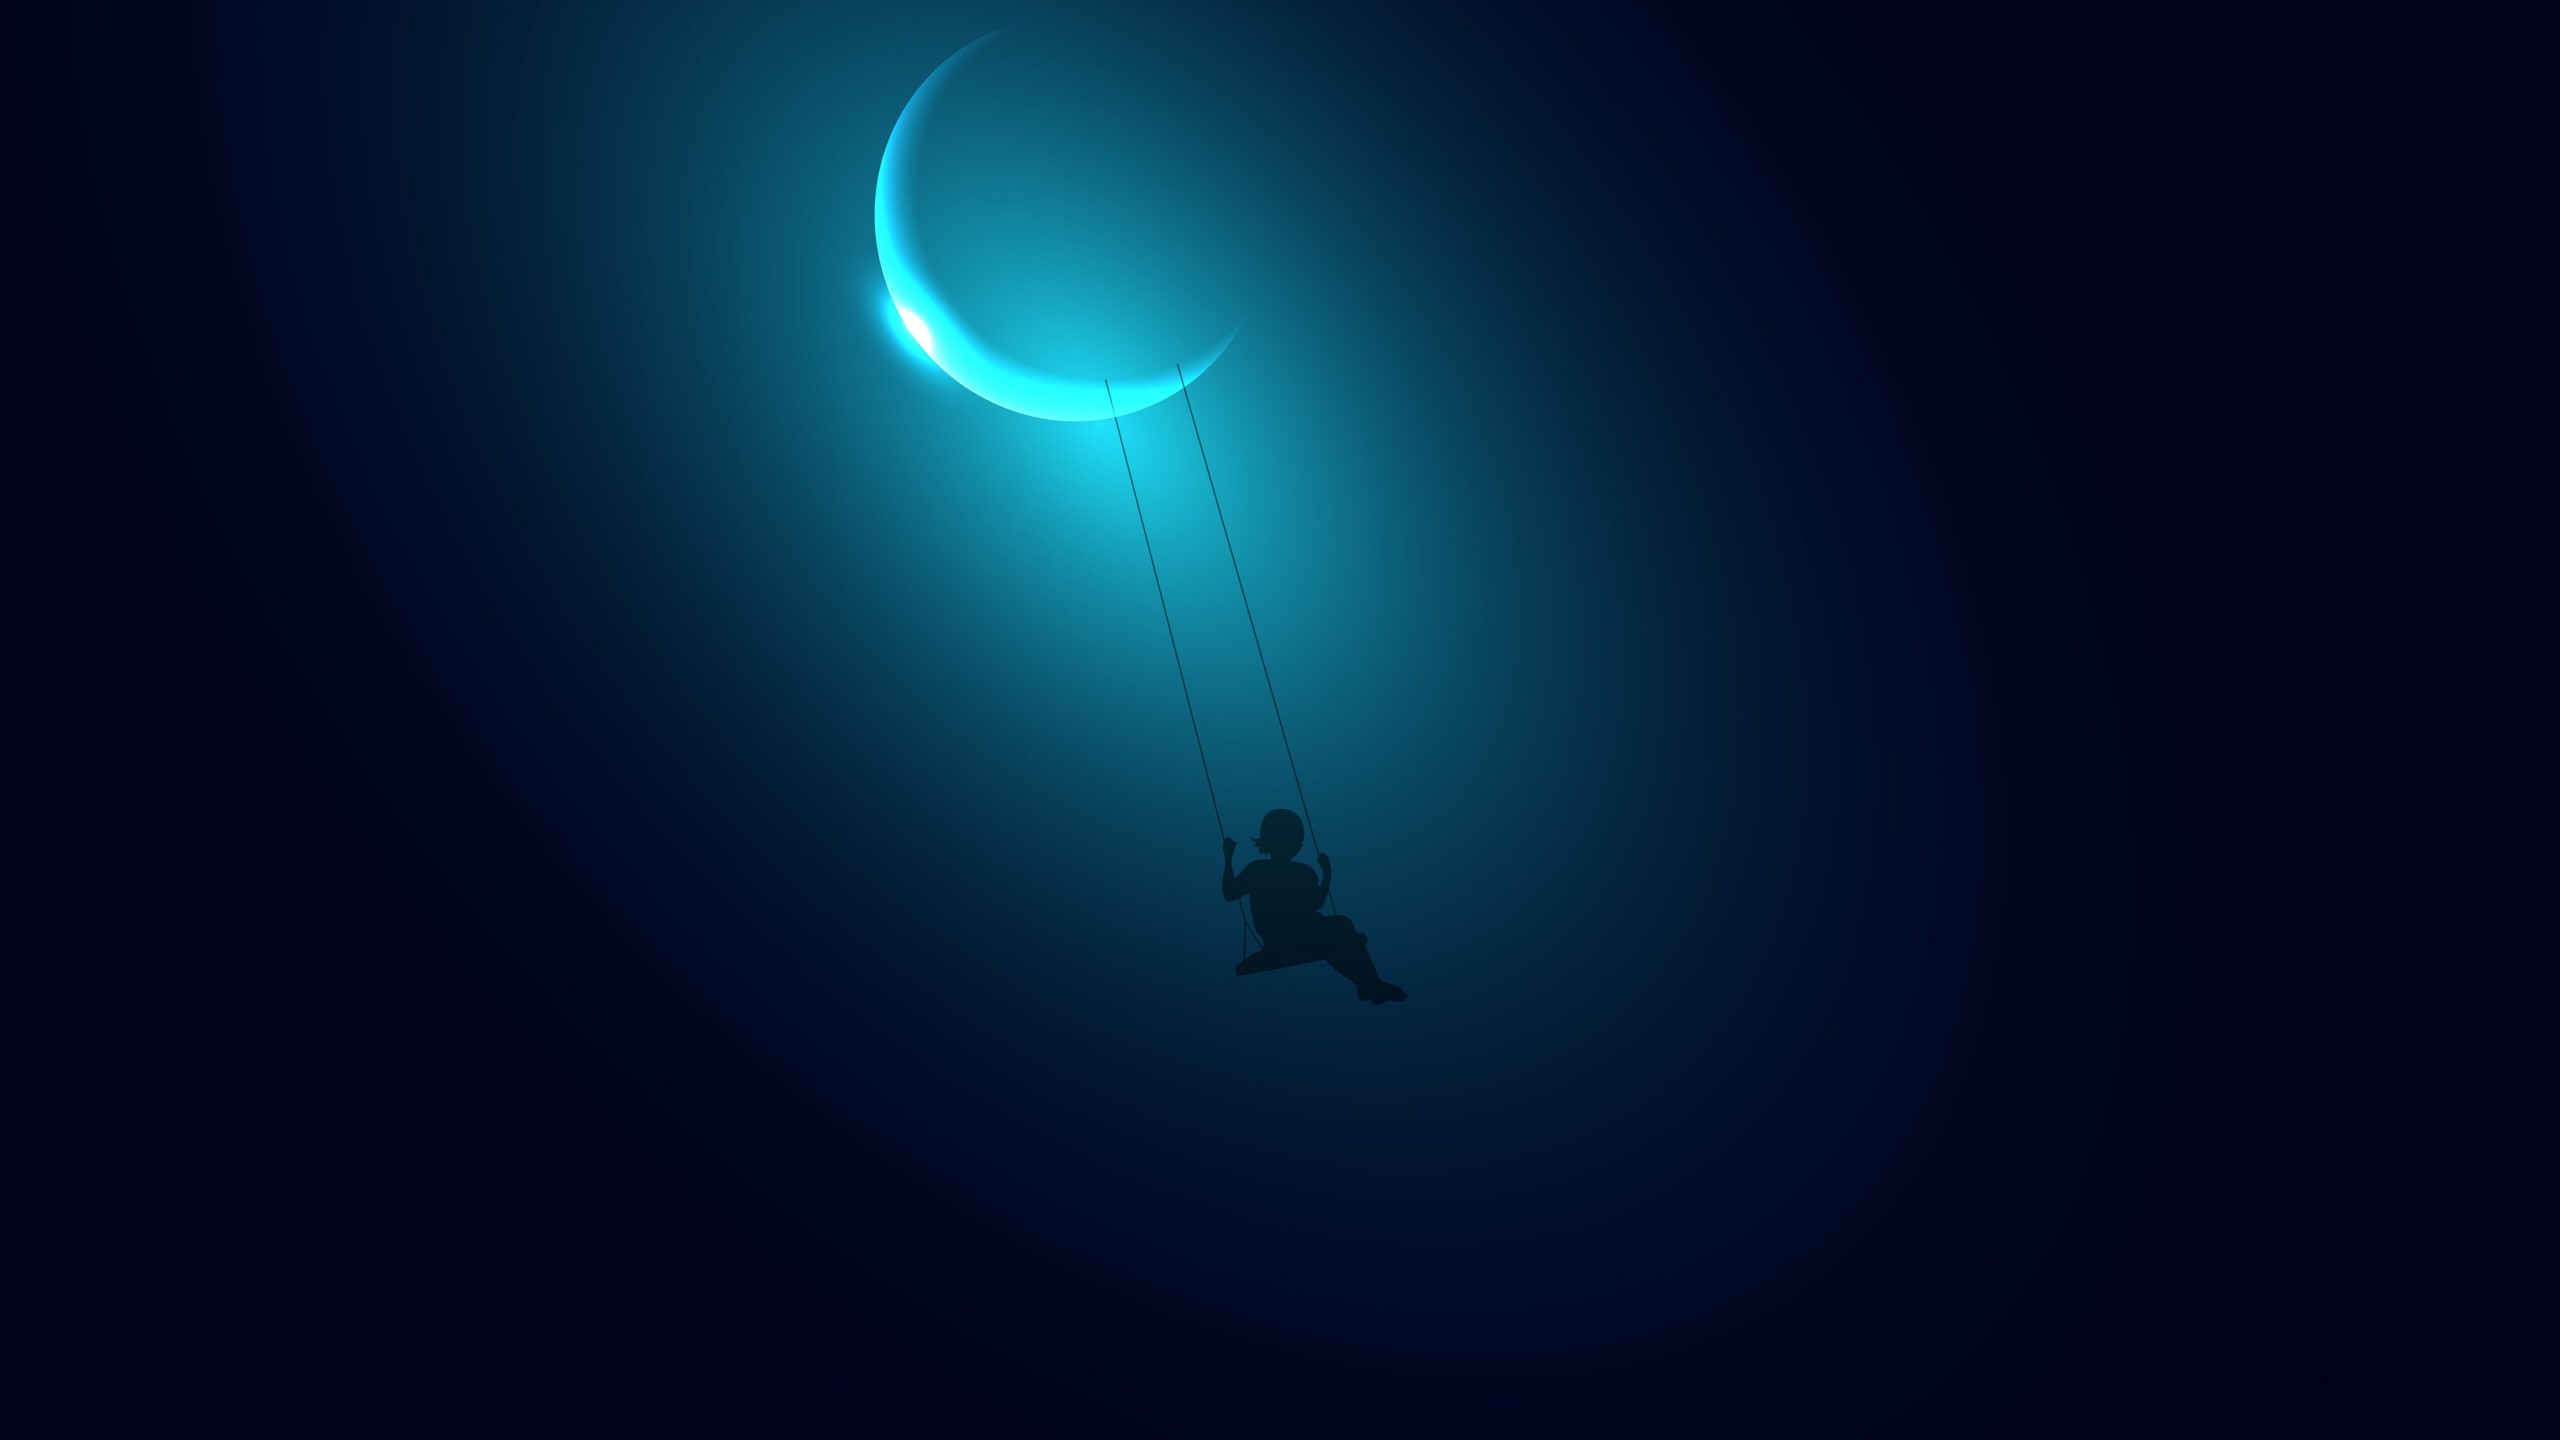 Little Girl Swinging on the Moon Wallpaper for Desktop 2560x1440